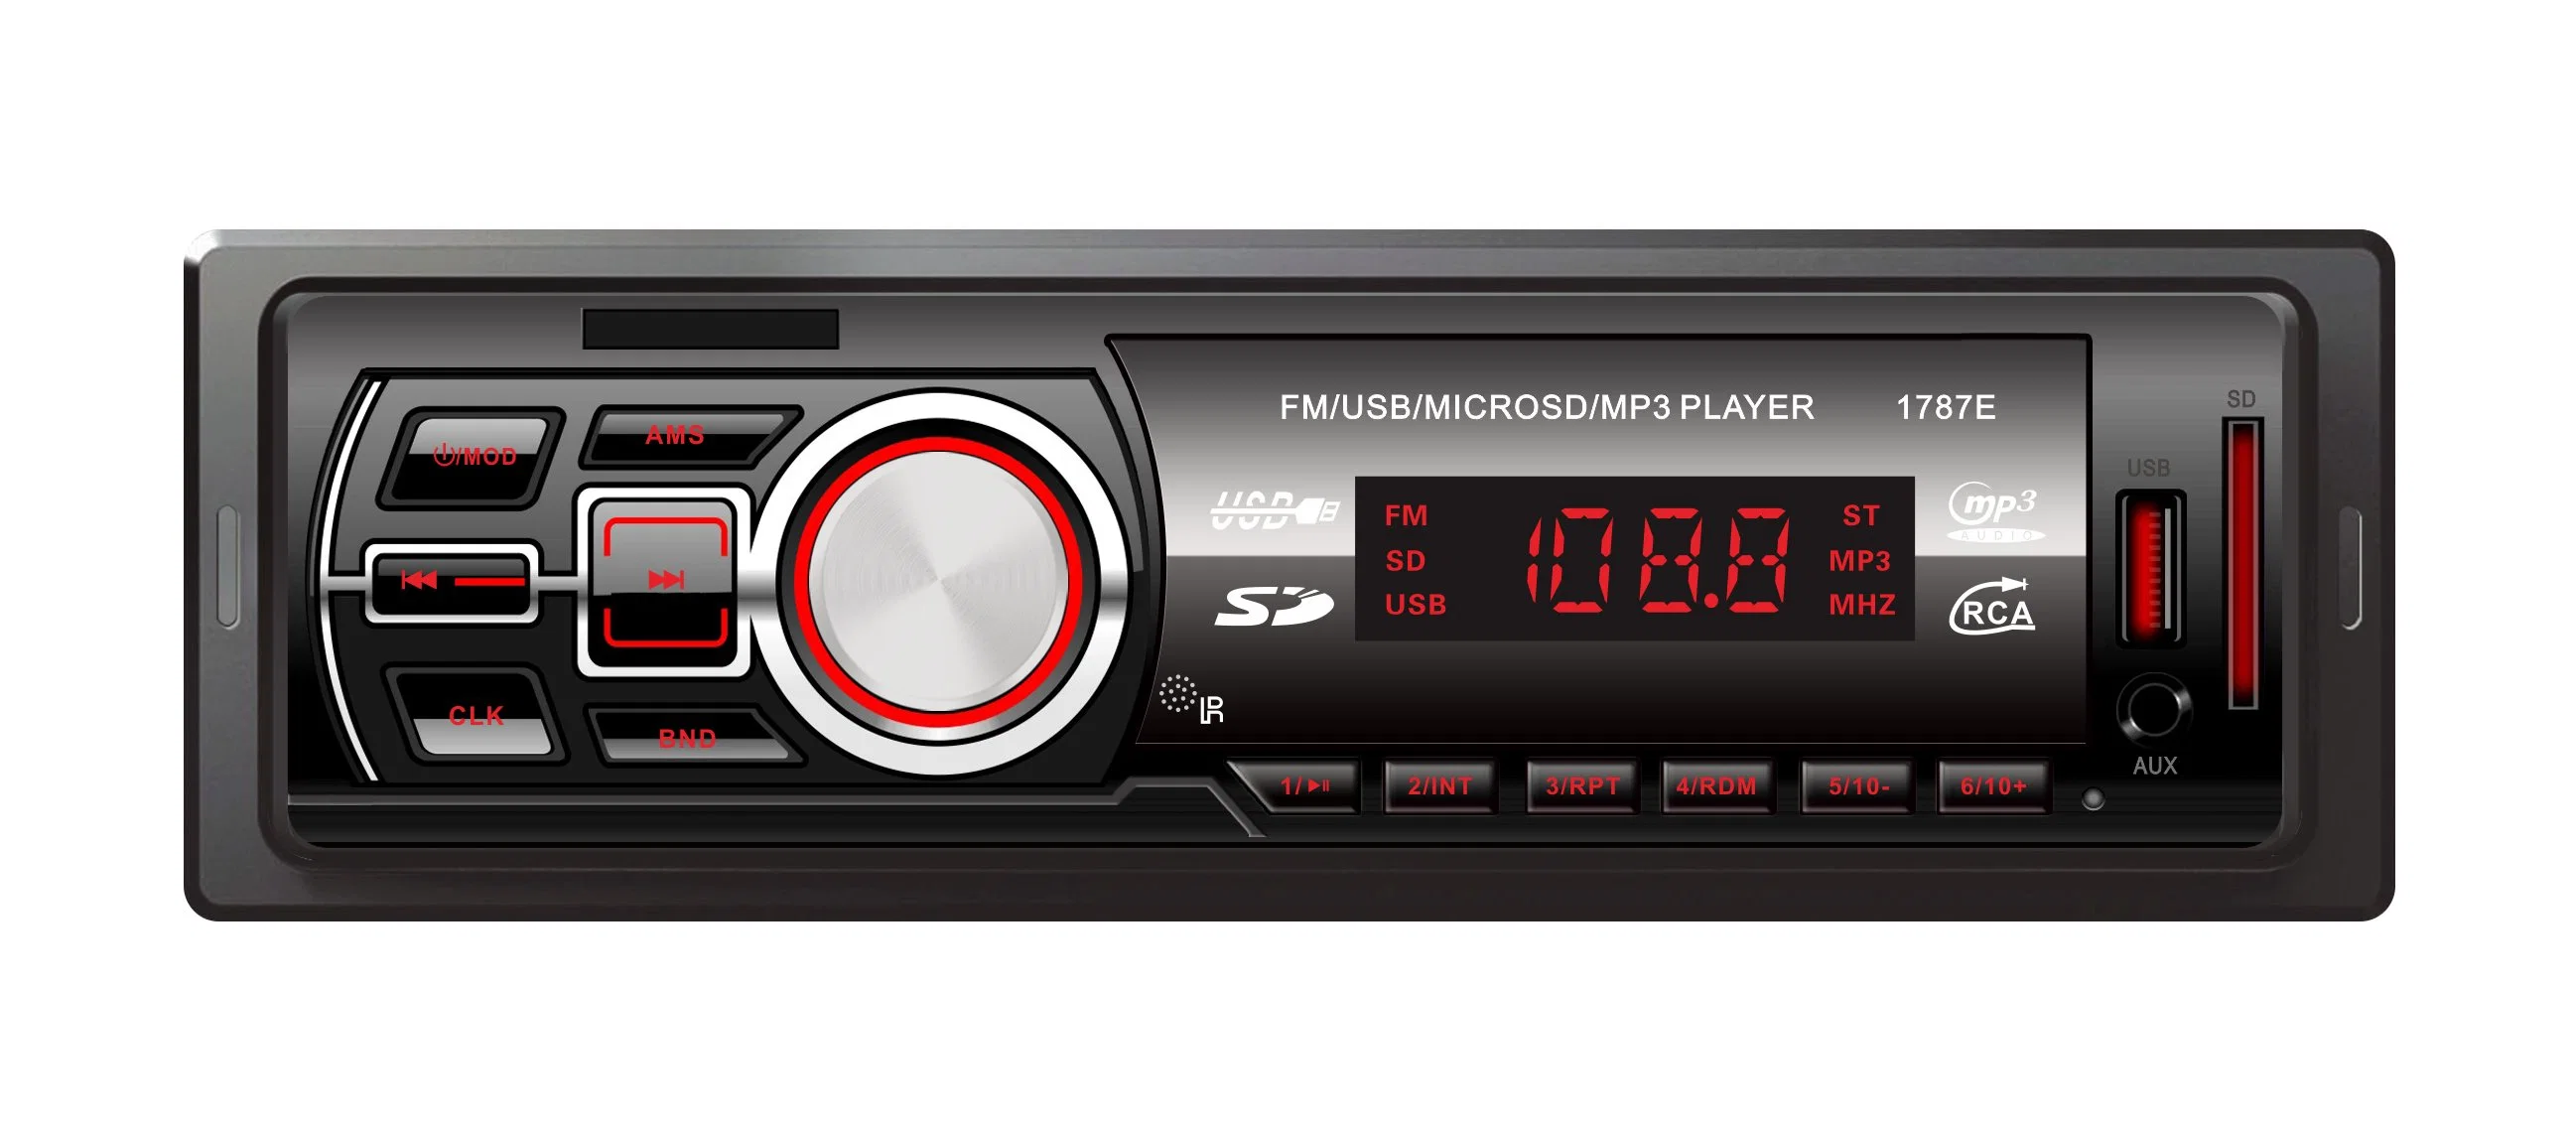 Receptor multimédia digital Car Audio Leitor de MP3 Electronics